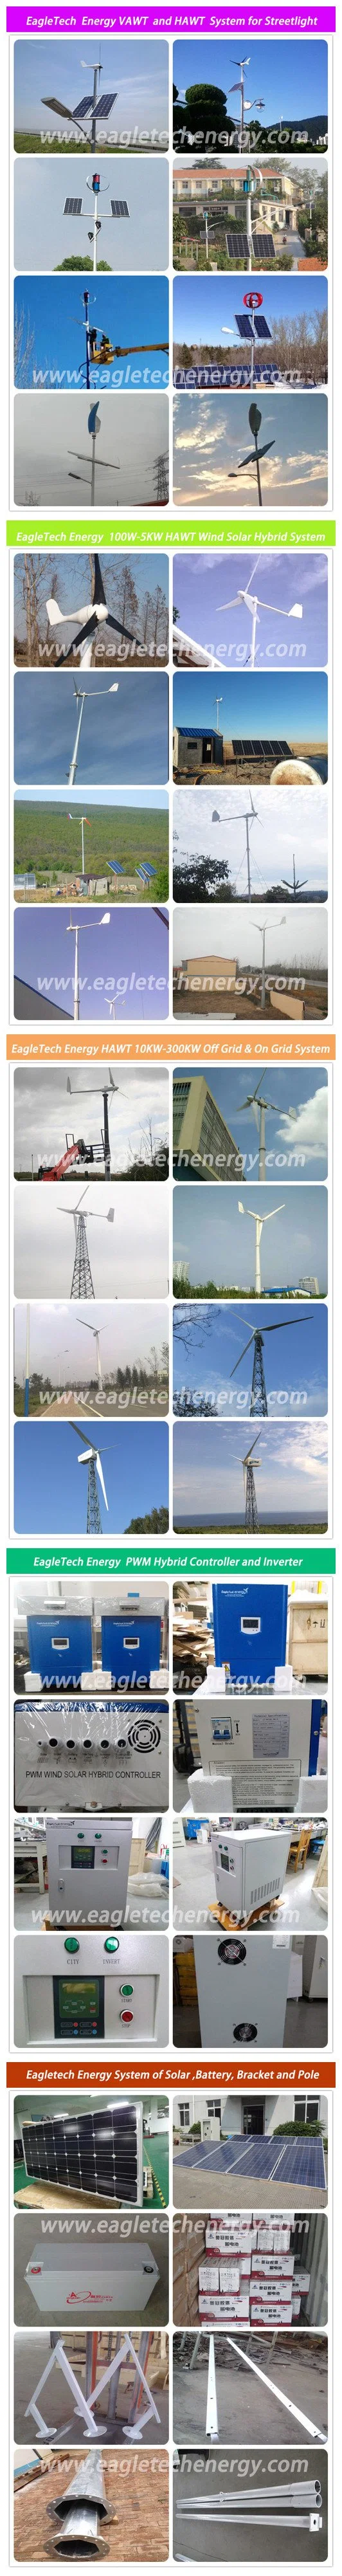 3kw Home Use Wind Turbine / Wind Power Generator System (3000W)